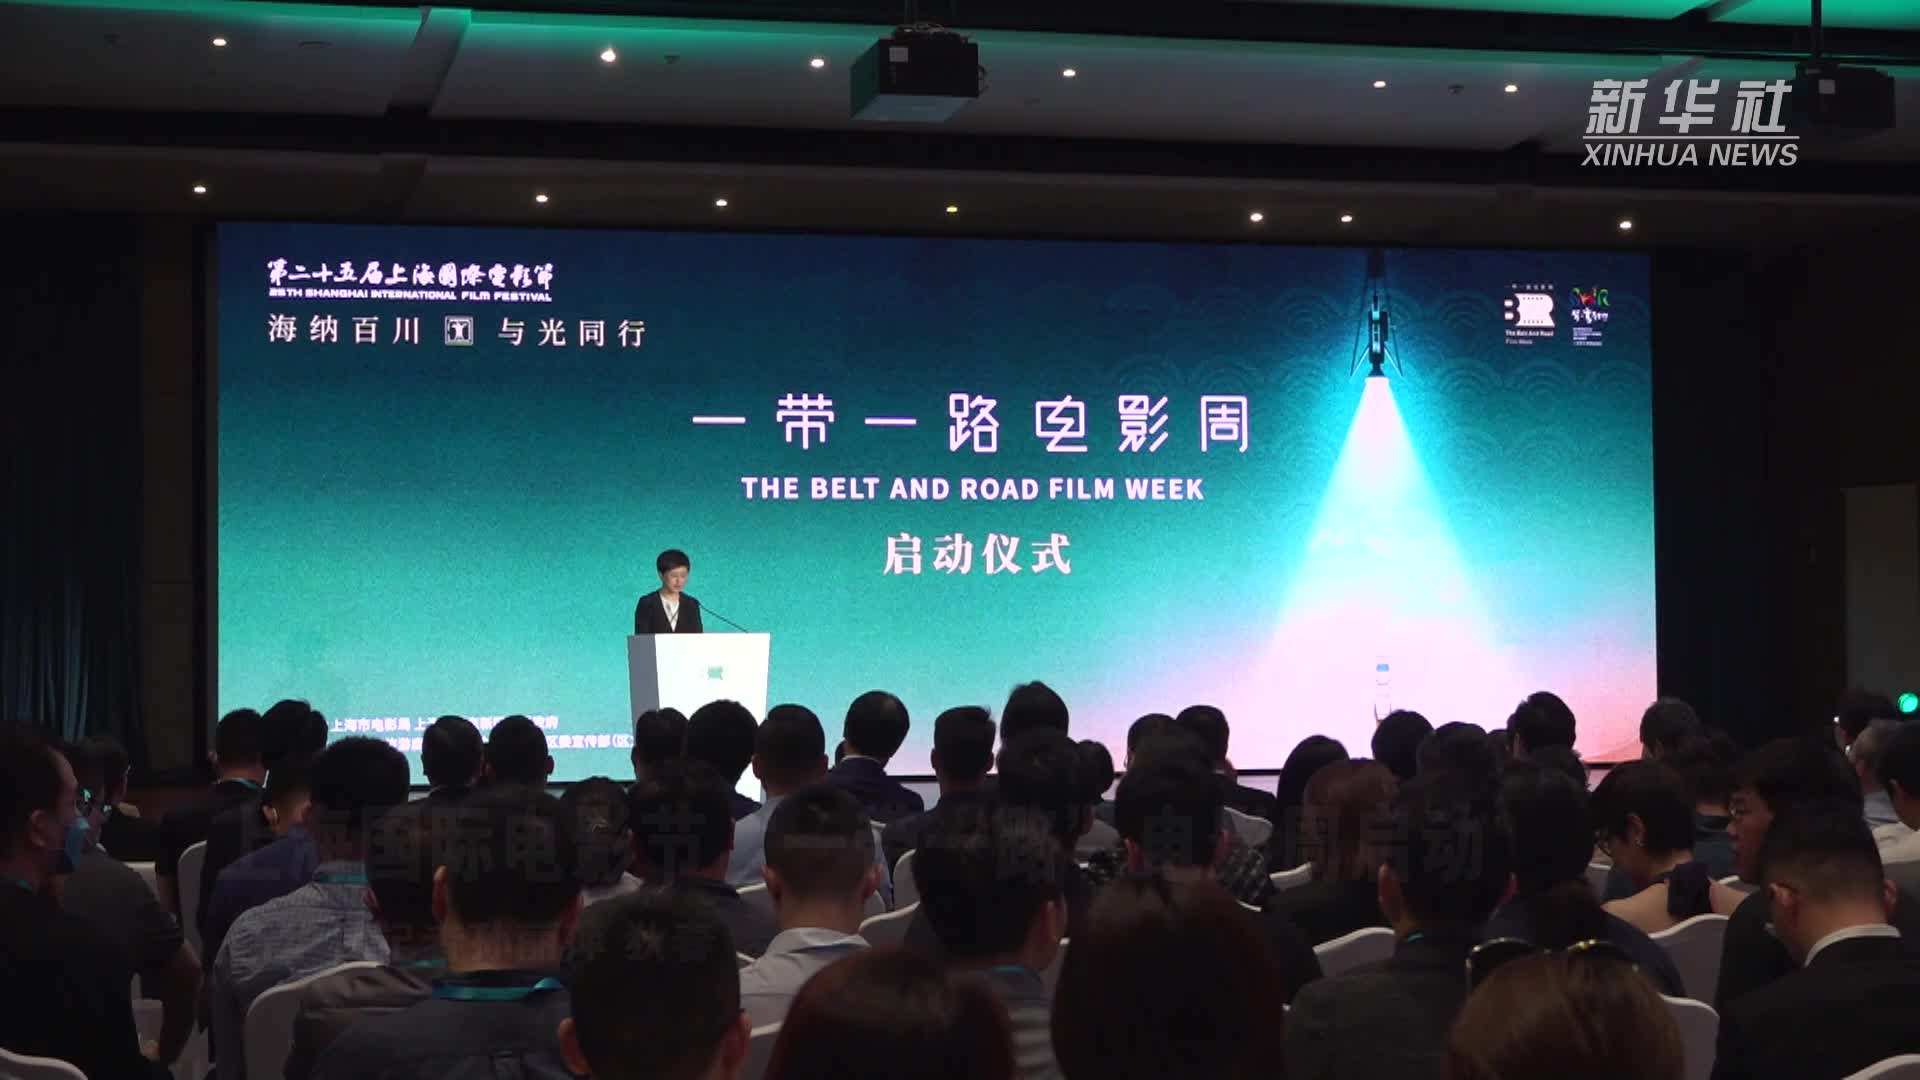 上海国际电影节“一带一路”电影周启动